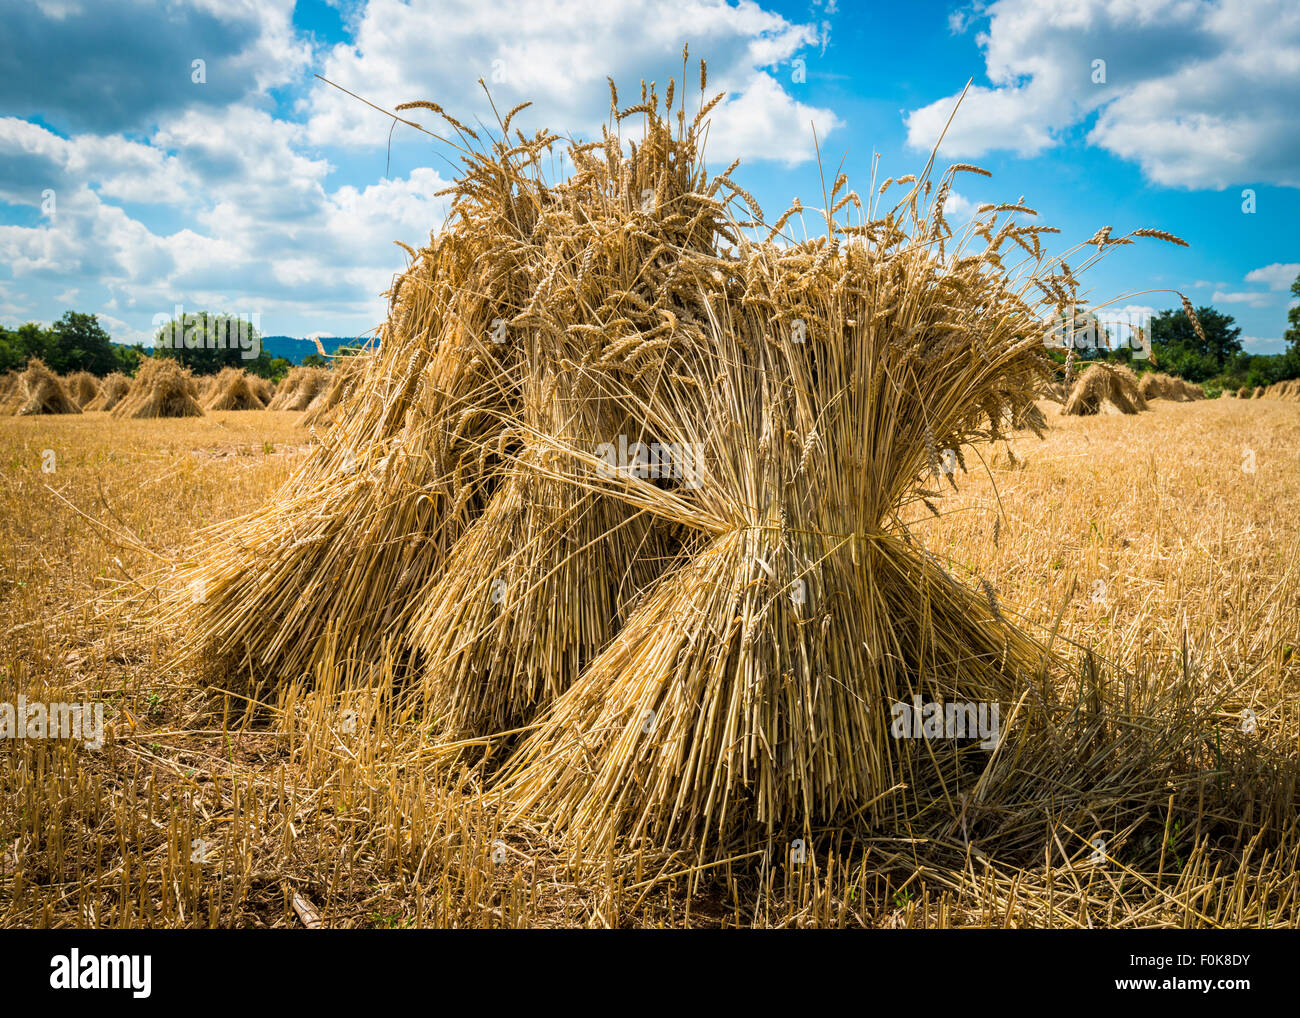 La récolte du blé d'été livré dans gerbes Banque D'Images